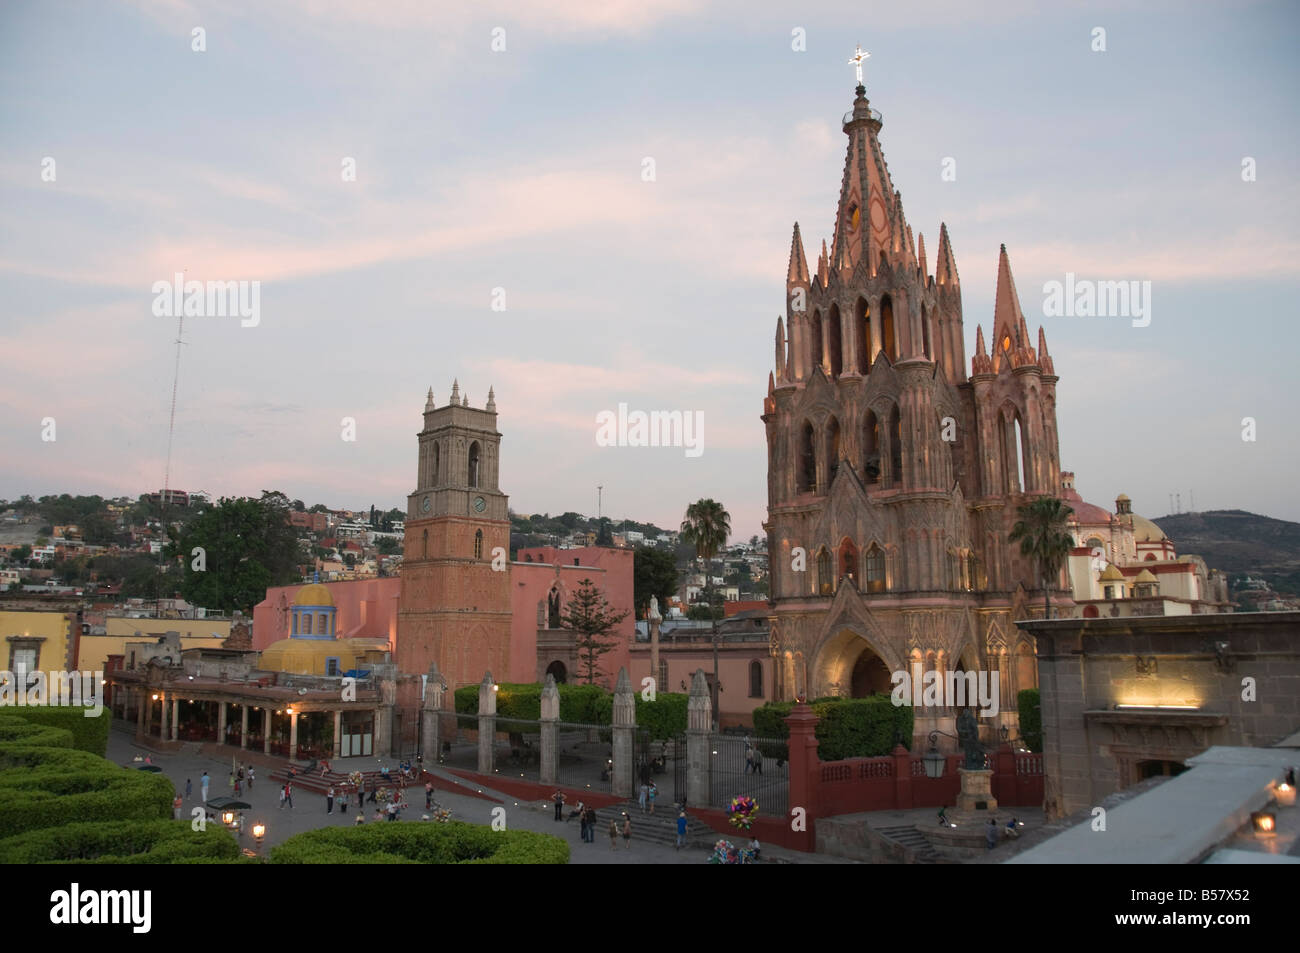 La parroquia, iglesia notable por su fantástica fachada neogótica, San Miguel de Allende (San Miguel), estado de Guanajuato, México Foto de stock